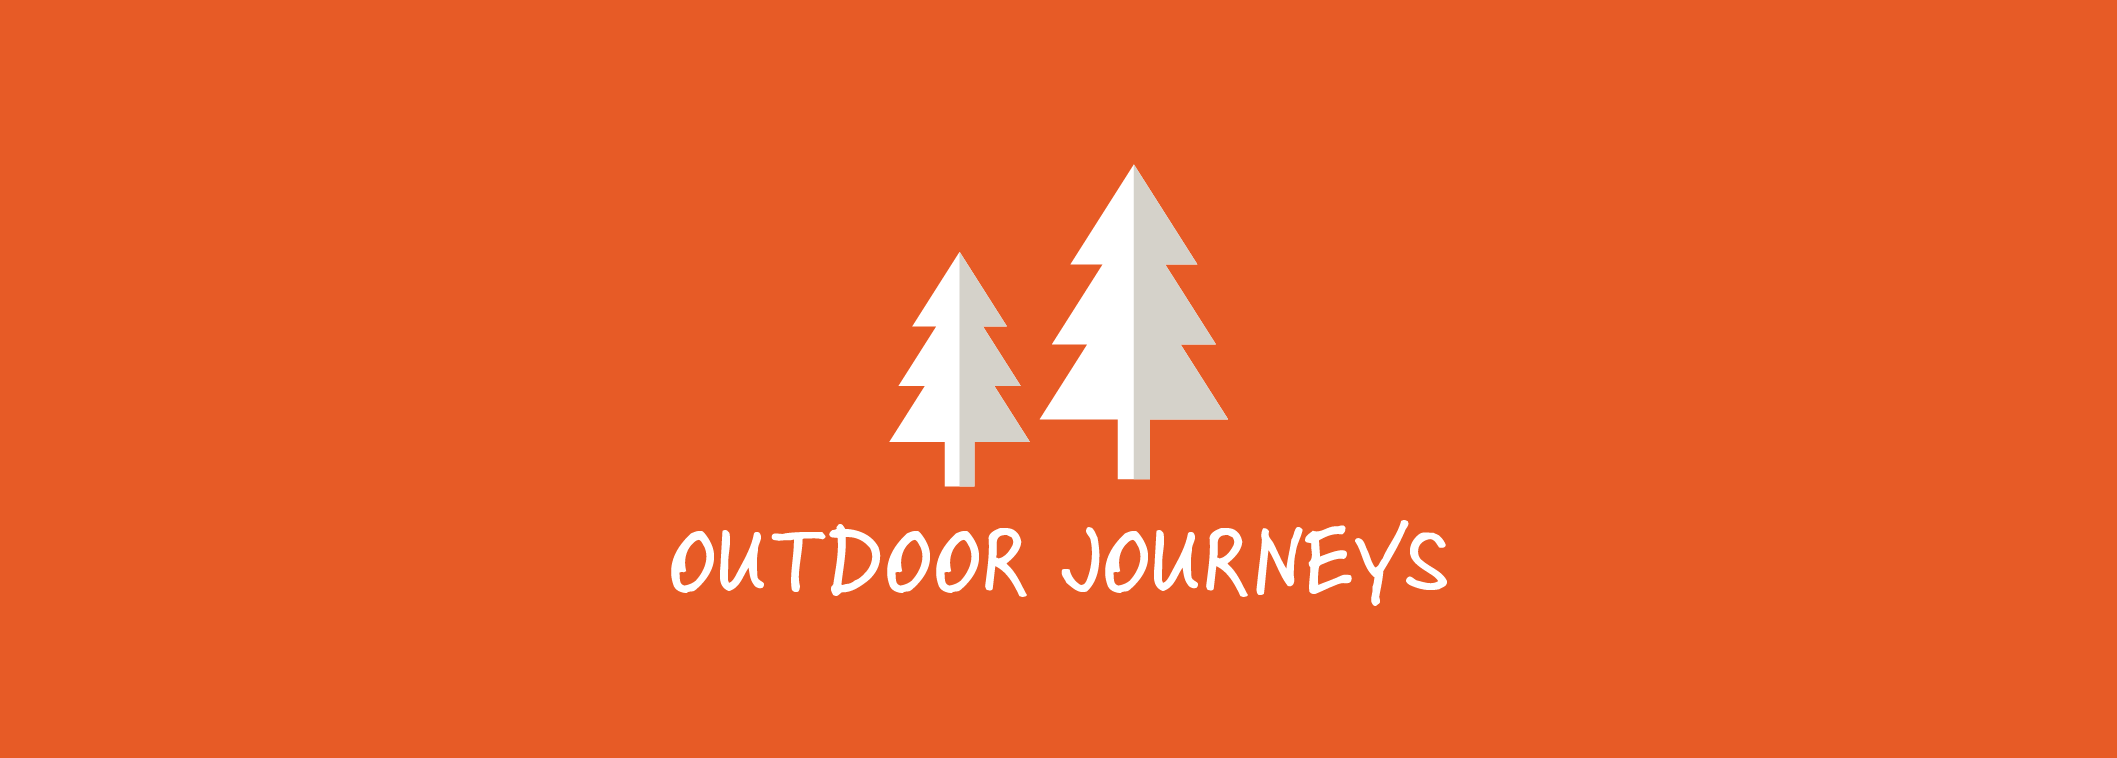 Outdoor Journeys Header